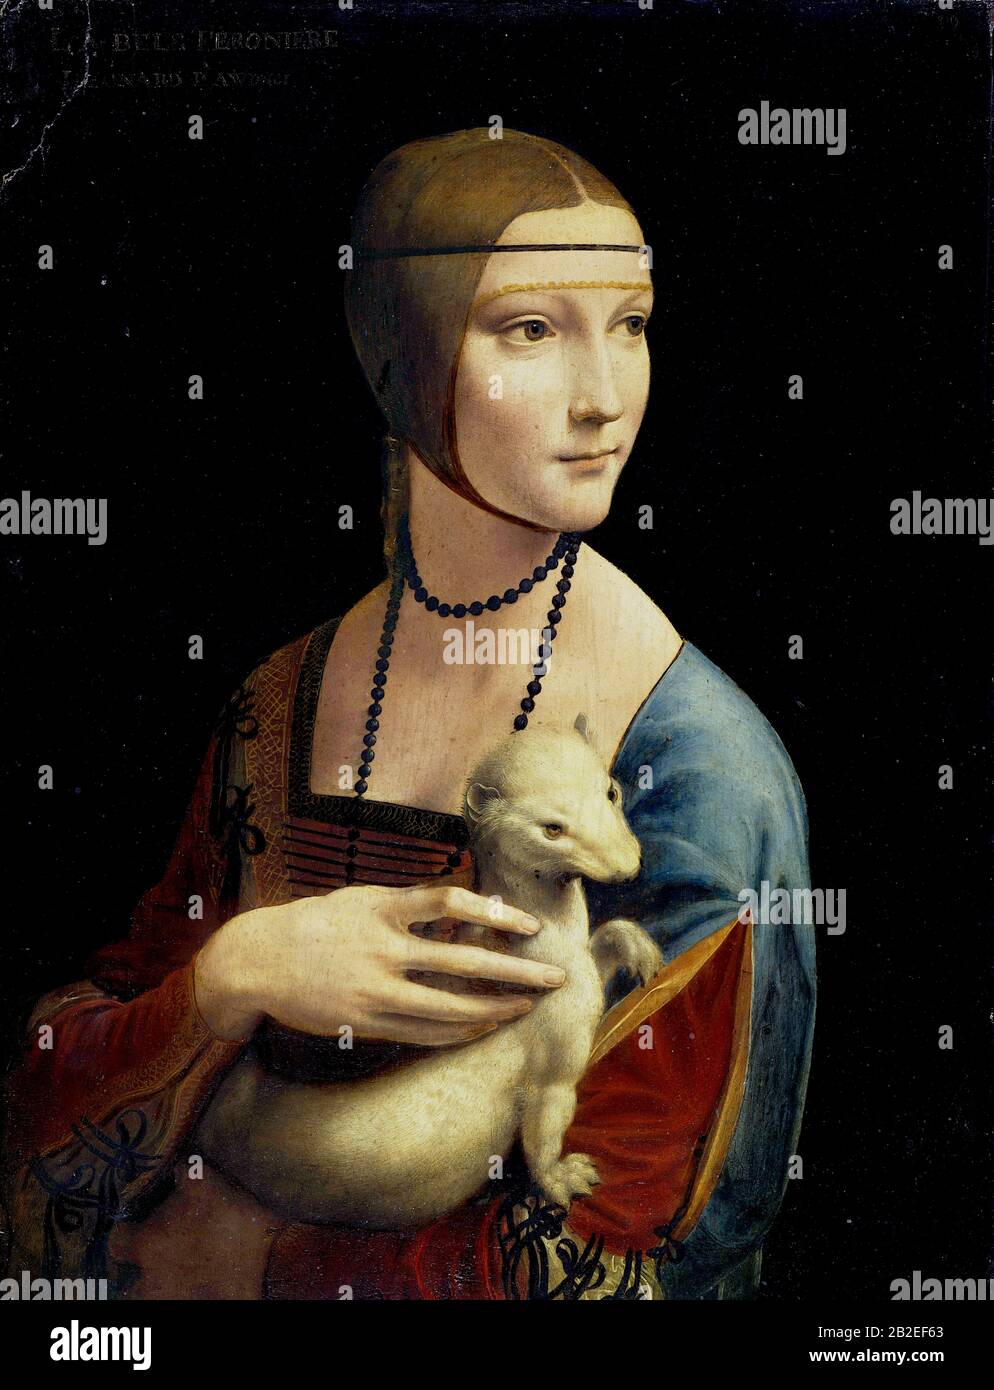 La Signora con un Ermine (Ritratto di Cecilia Gallerani) (circa 1490) di Leonardo da Vinci - Immagine Di Altissima qualità e risoluzione Foto Stock